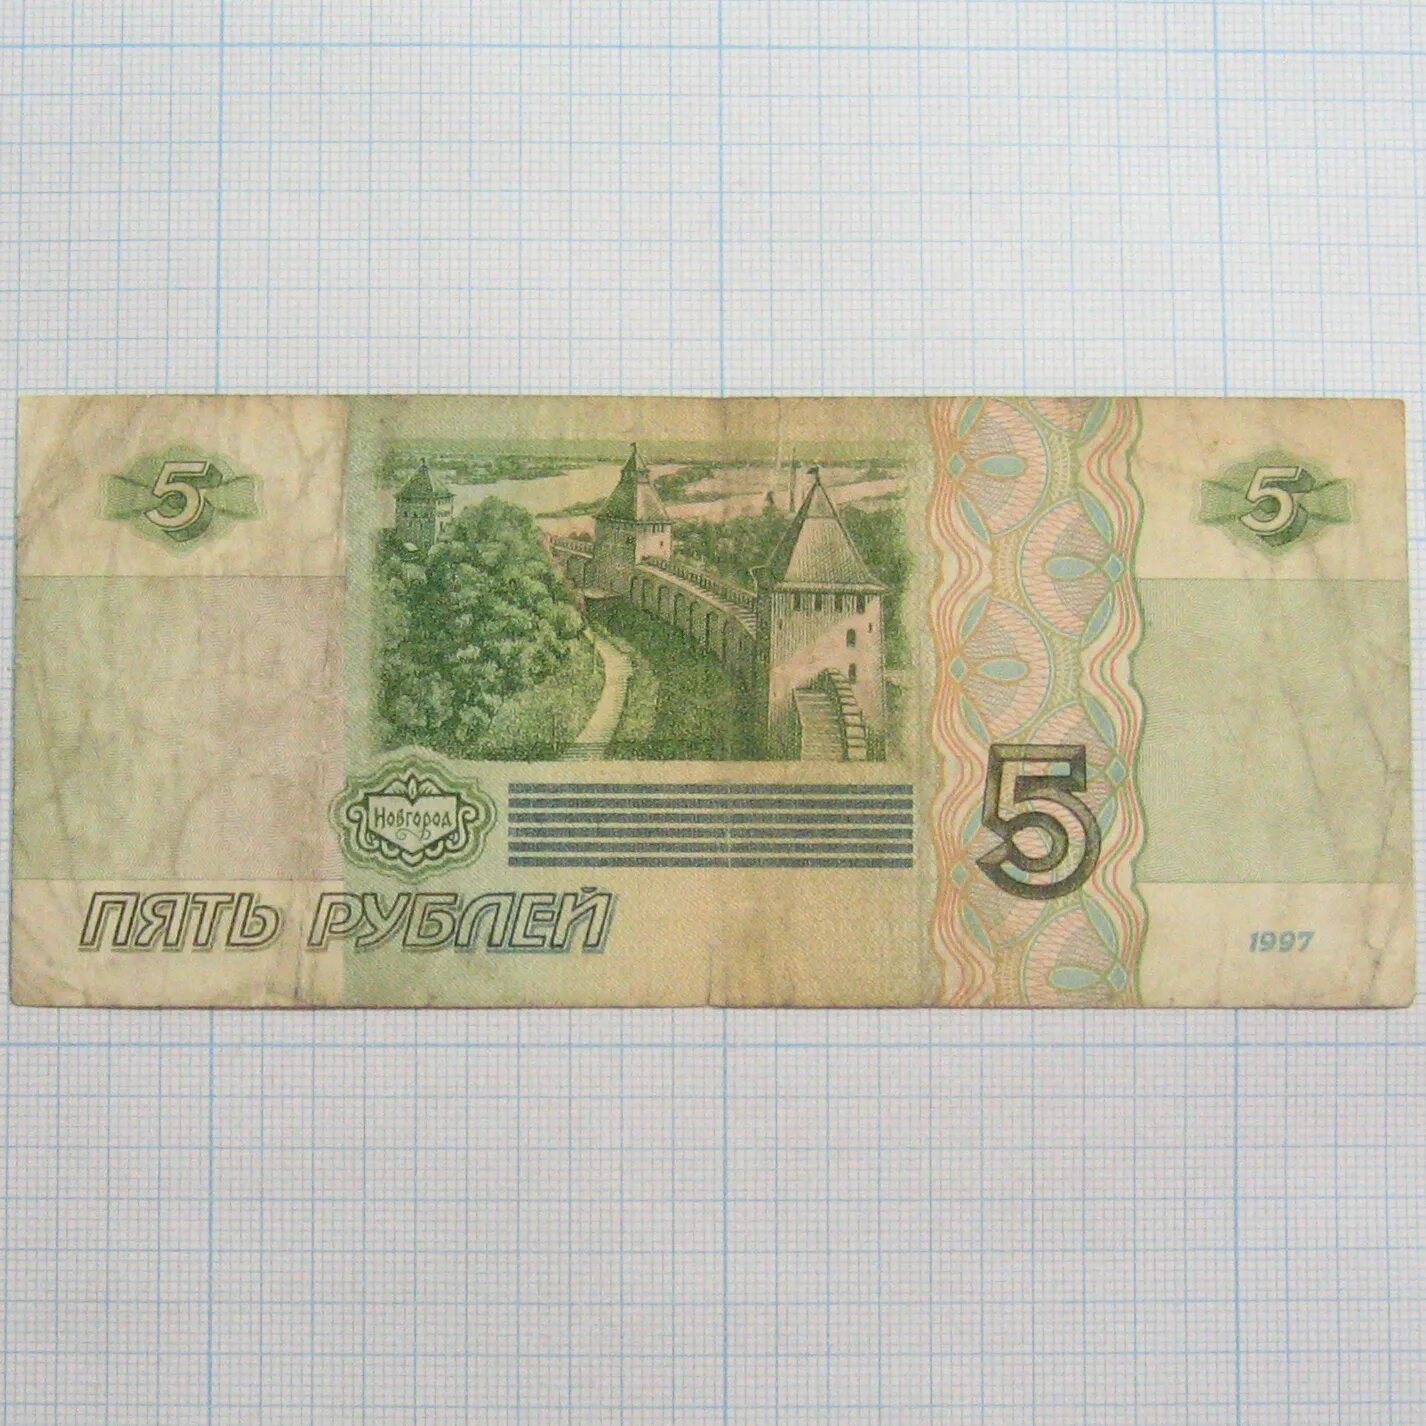 Купюра 5 1997 года. Купюра 5 рублей 1997 с всадником. Деревянный купюры 5. Абам 1997.